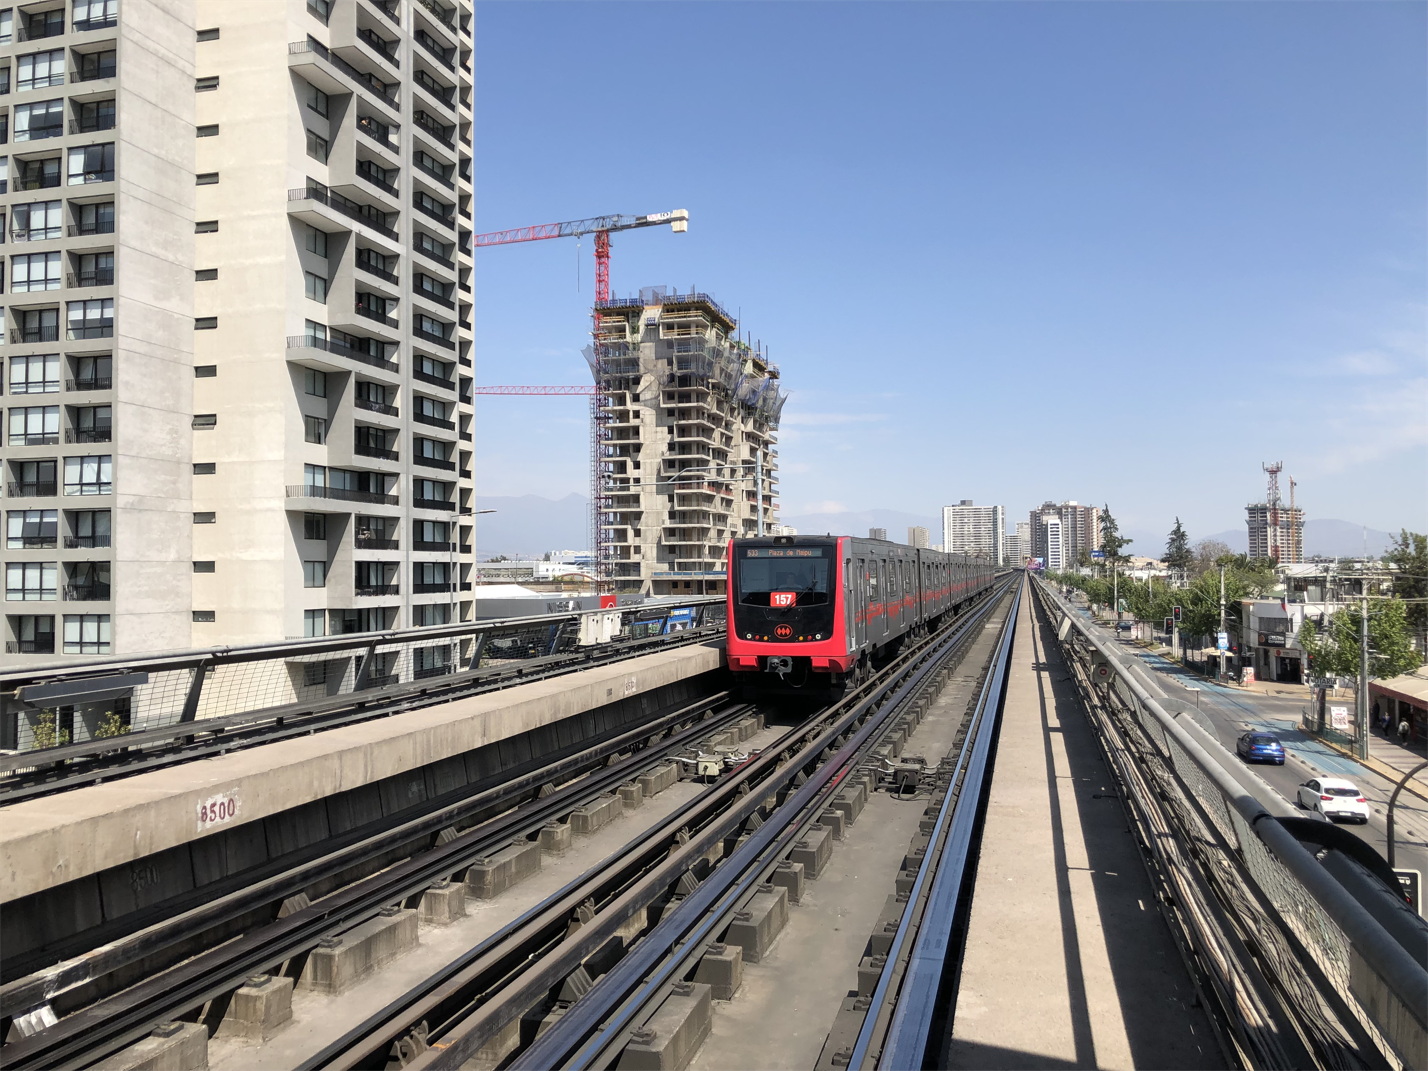 Santiago, (unknown) # 1571; Santiago — Metro — Line 5